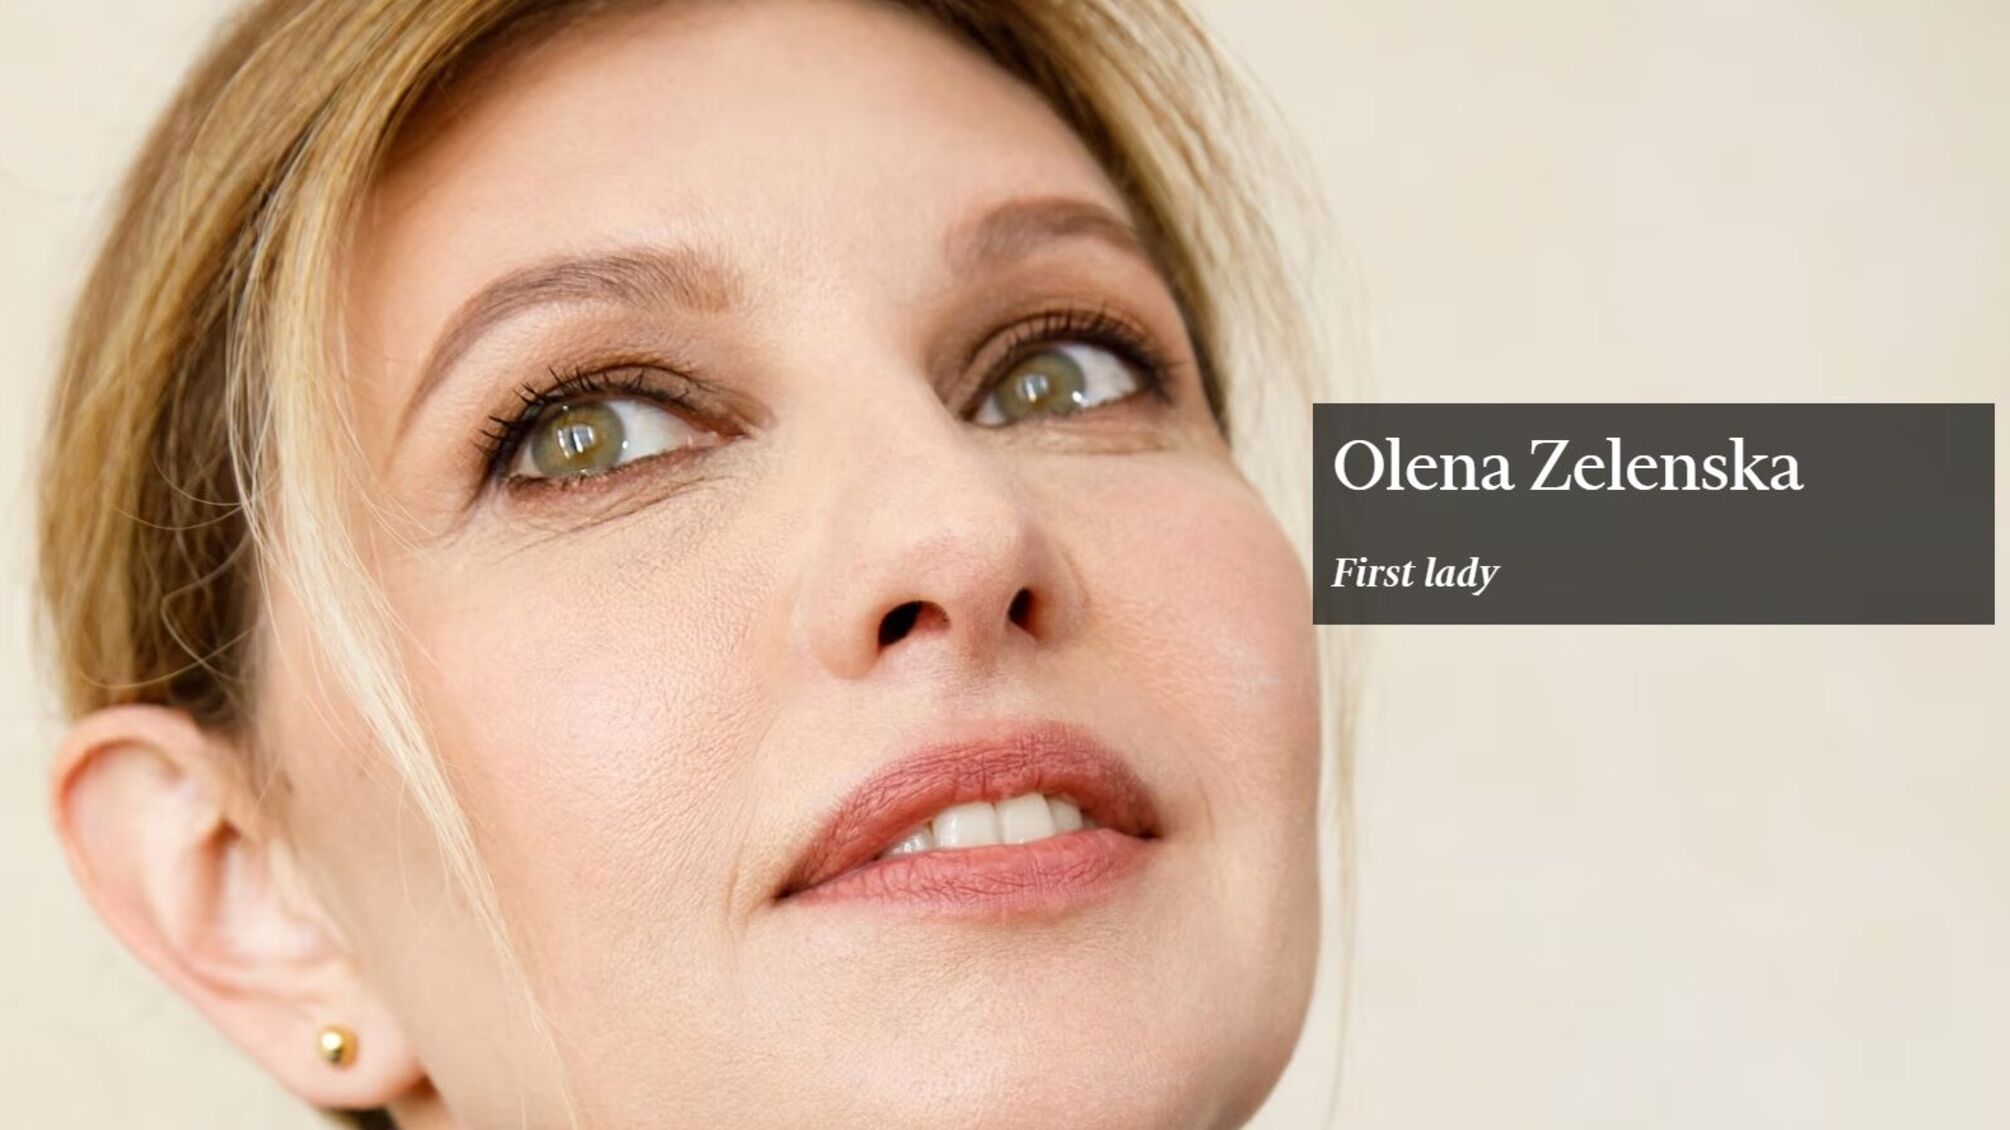 Елена Зеленская вошла в список самых влиятельных женщин мира 2023 года по версии издания Financial Times